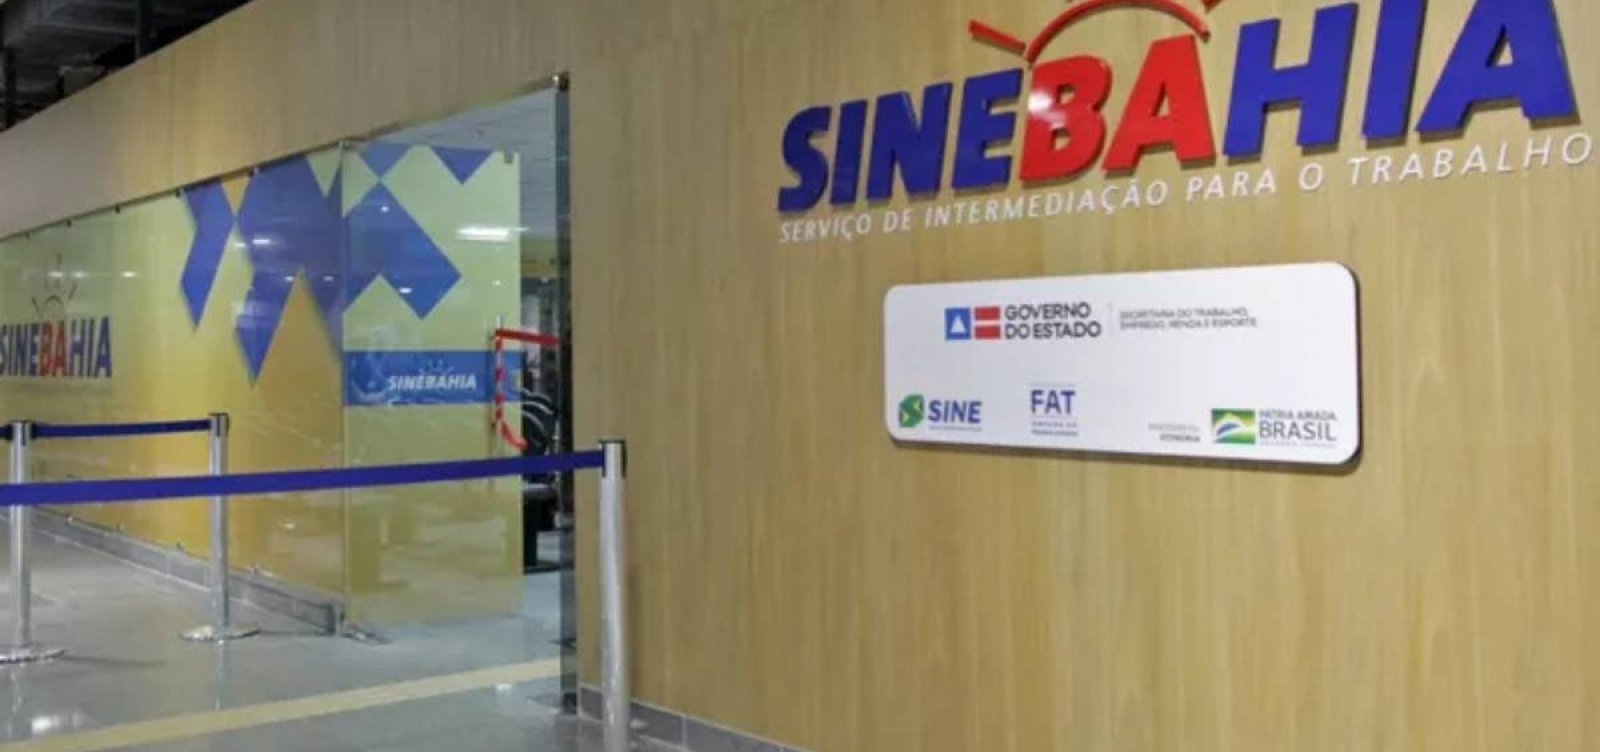 SineBahia Terminal Pituaçu suspende atendimento ao público nesta sexta-feira